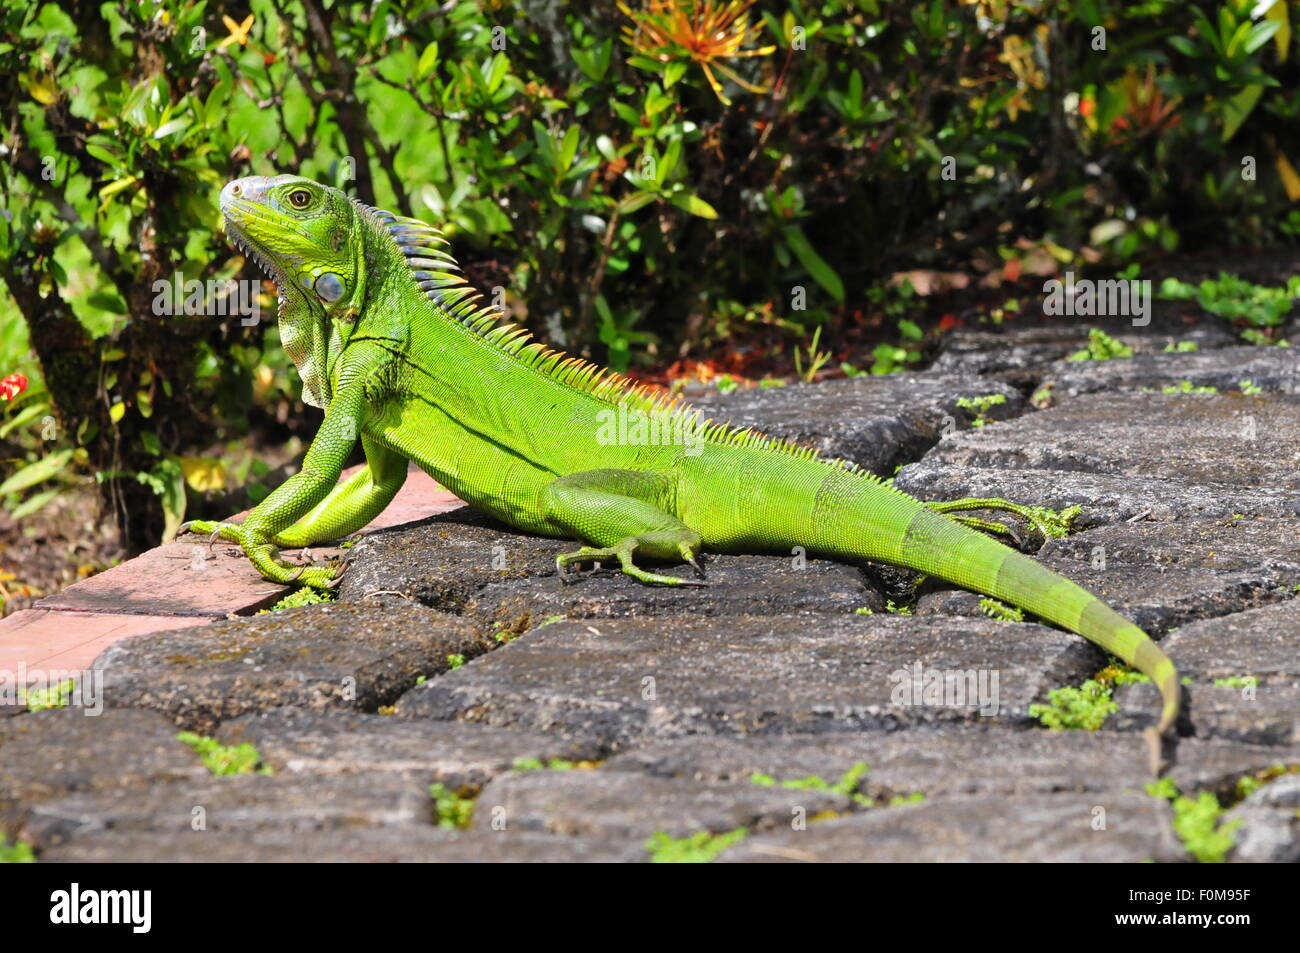 Iguane vert, en prenant un bain de soleil dans un jardin Banque D'Images